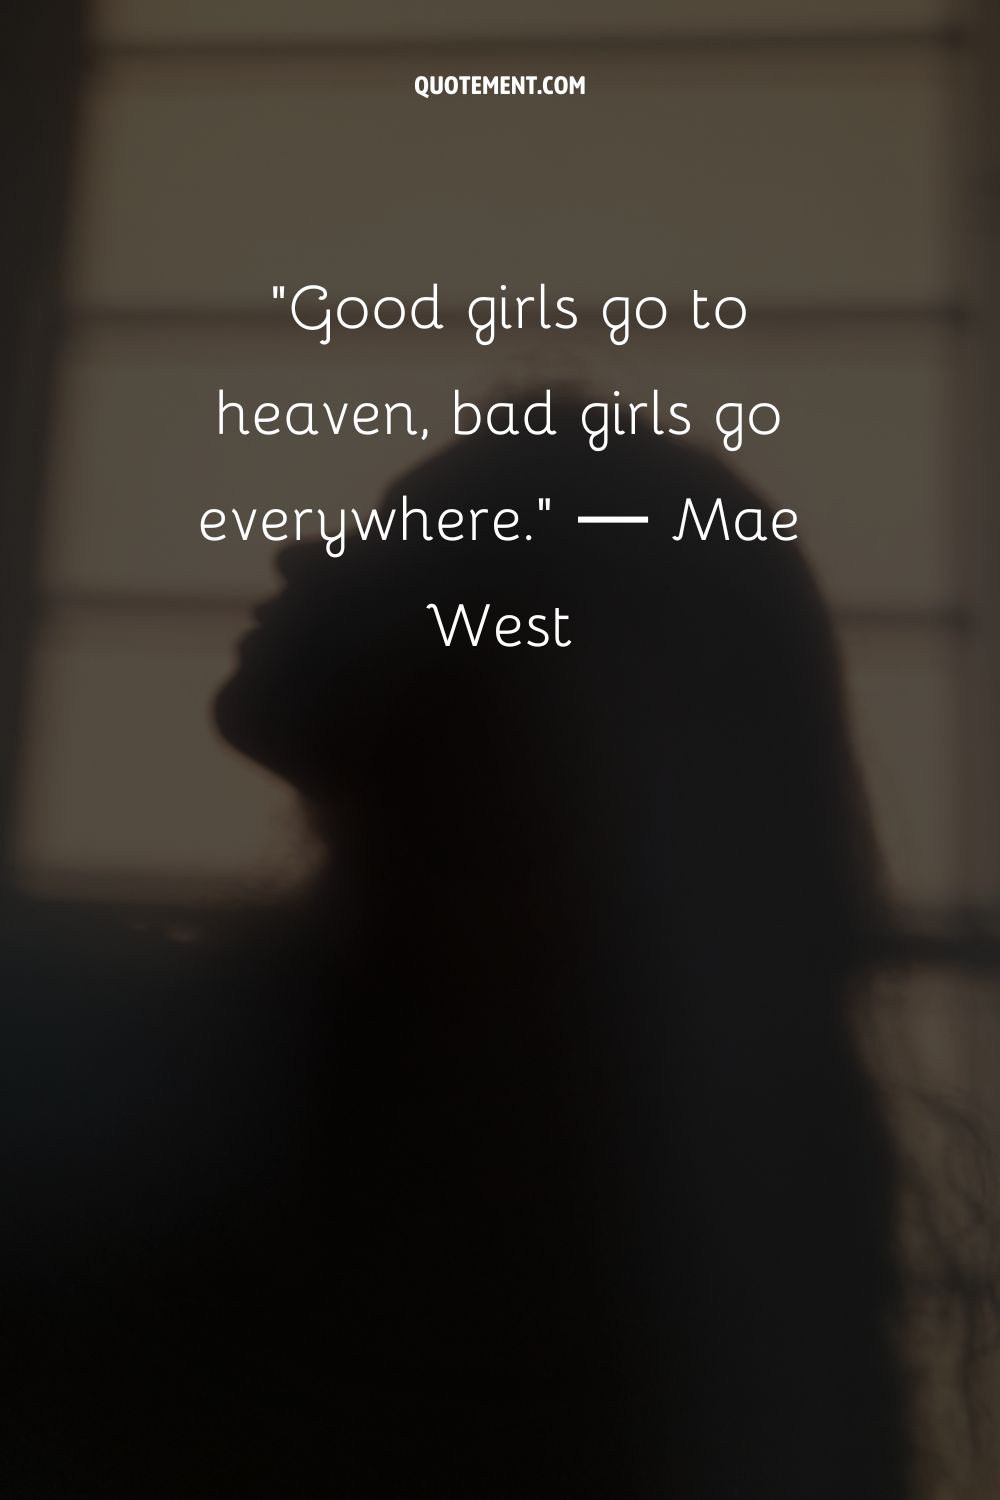 Good girls go to heaven, bad girls go everywhere